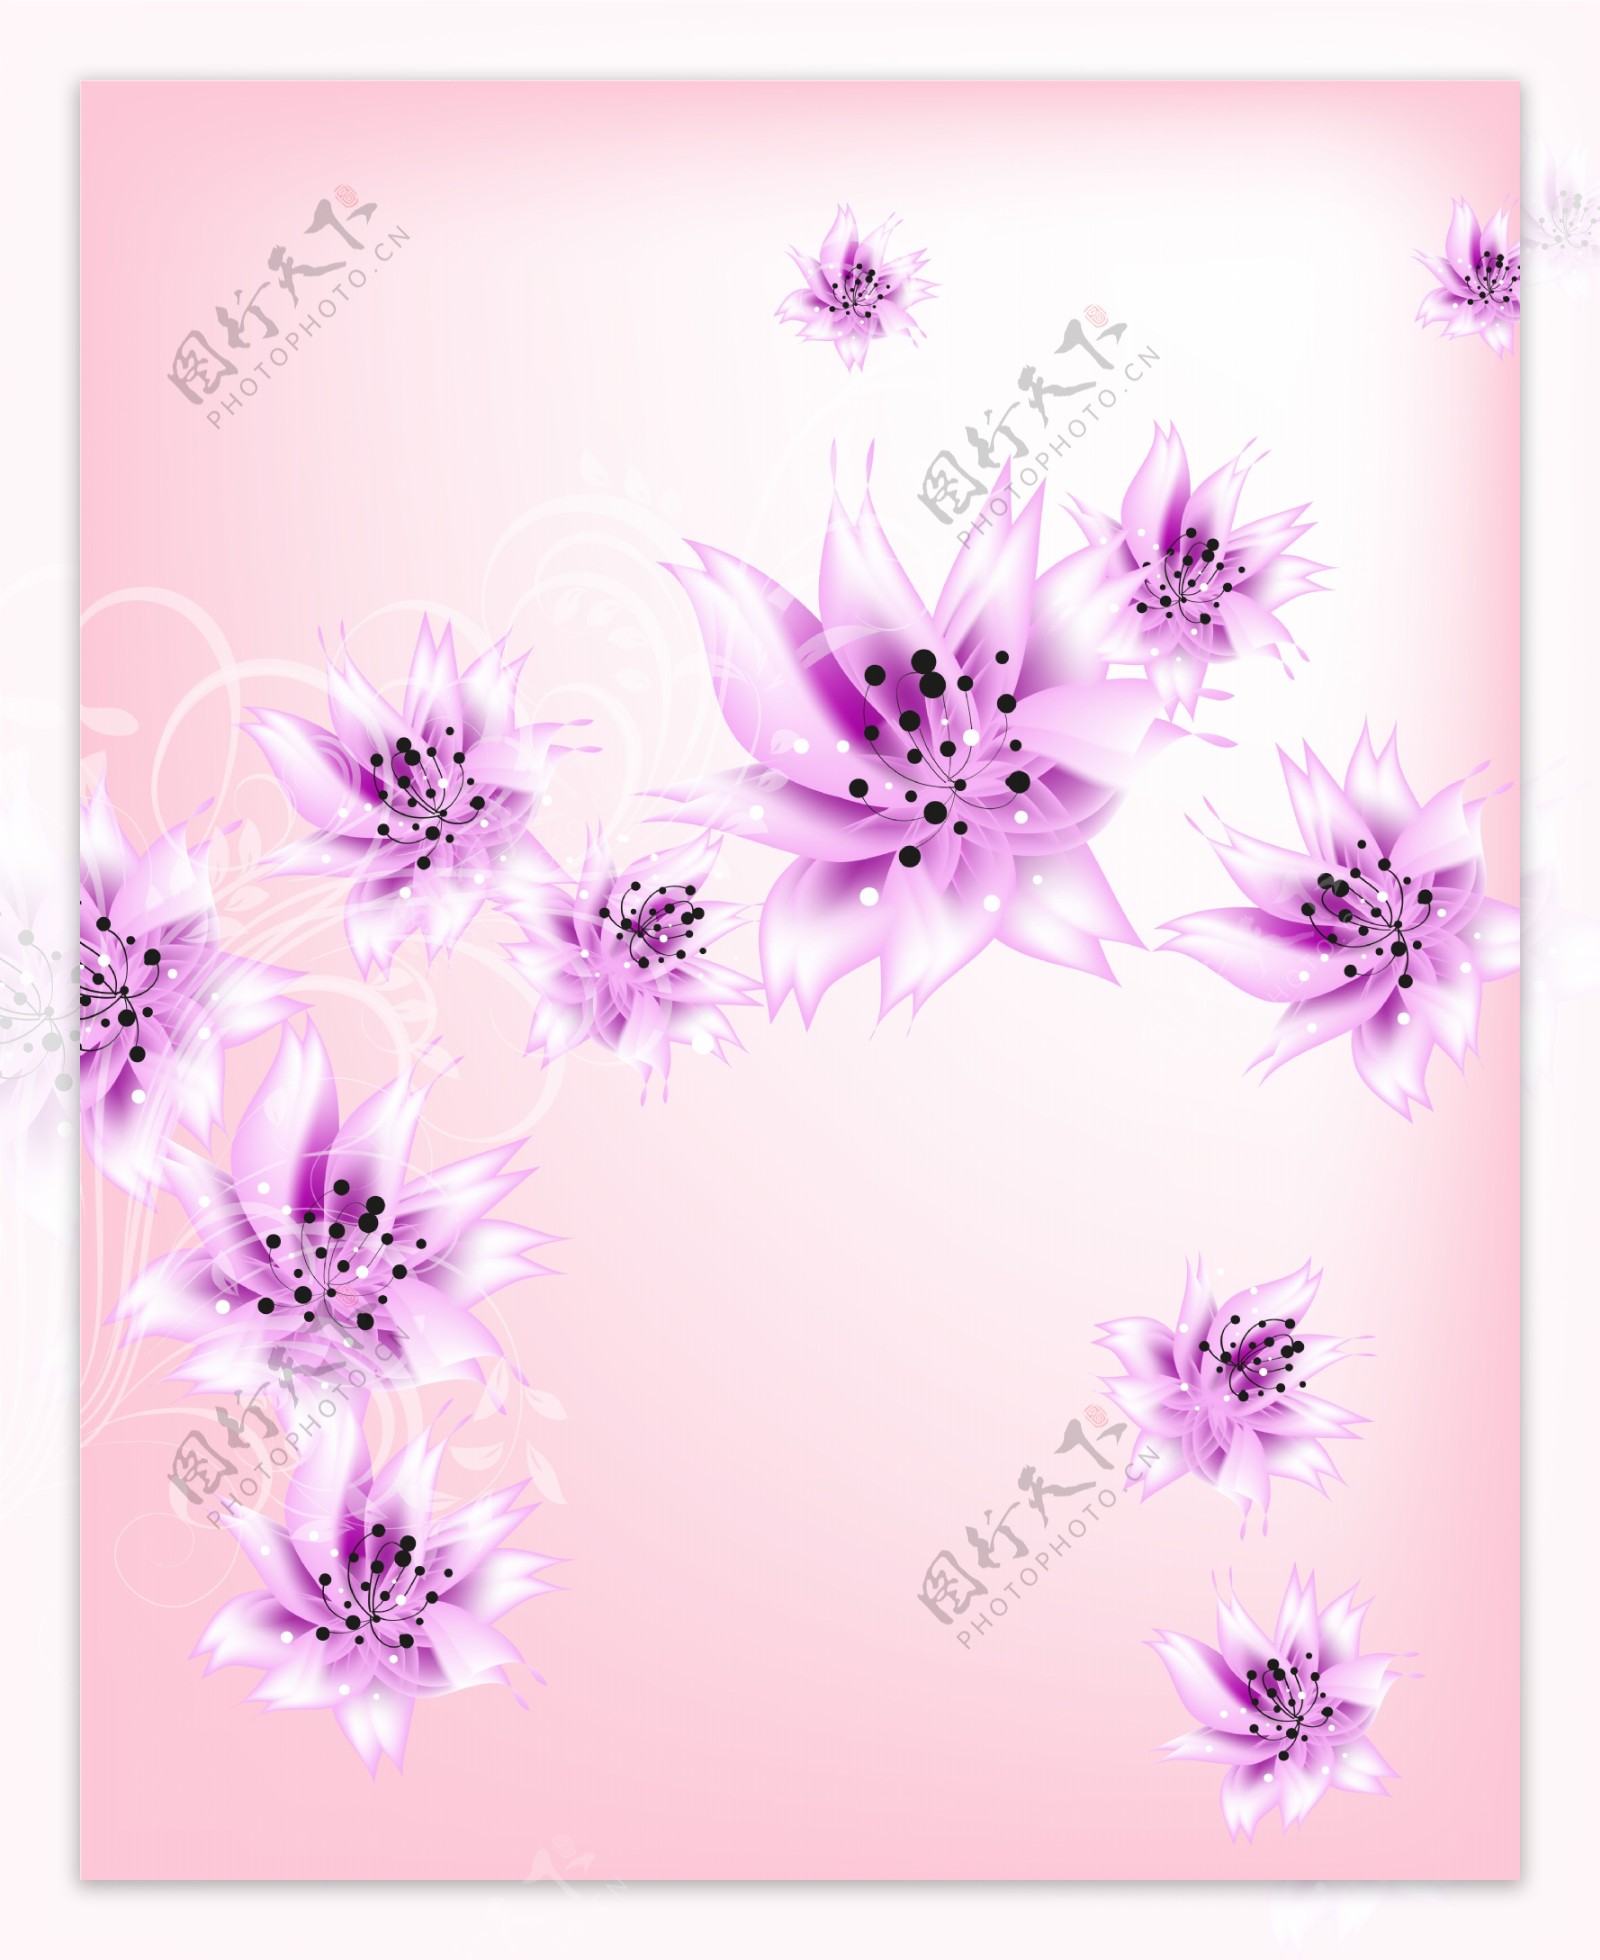 紫色梦幻手绘花朵漂亮移门图